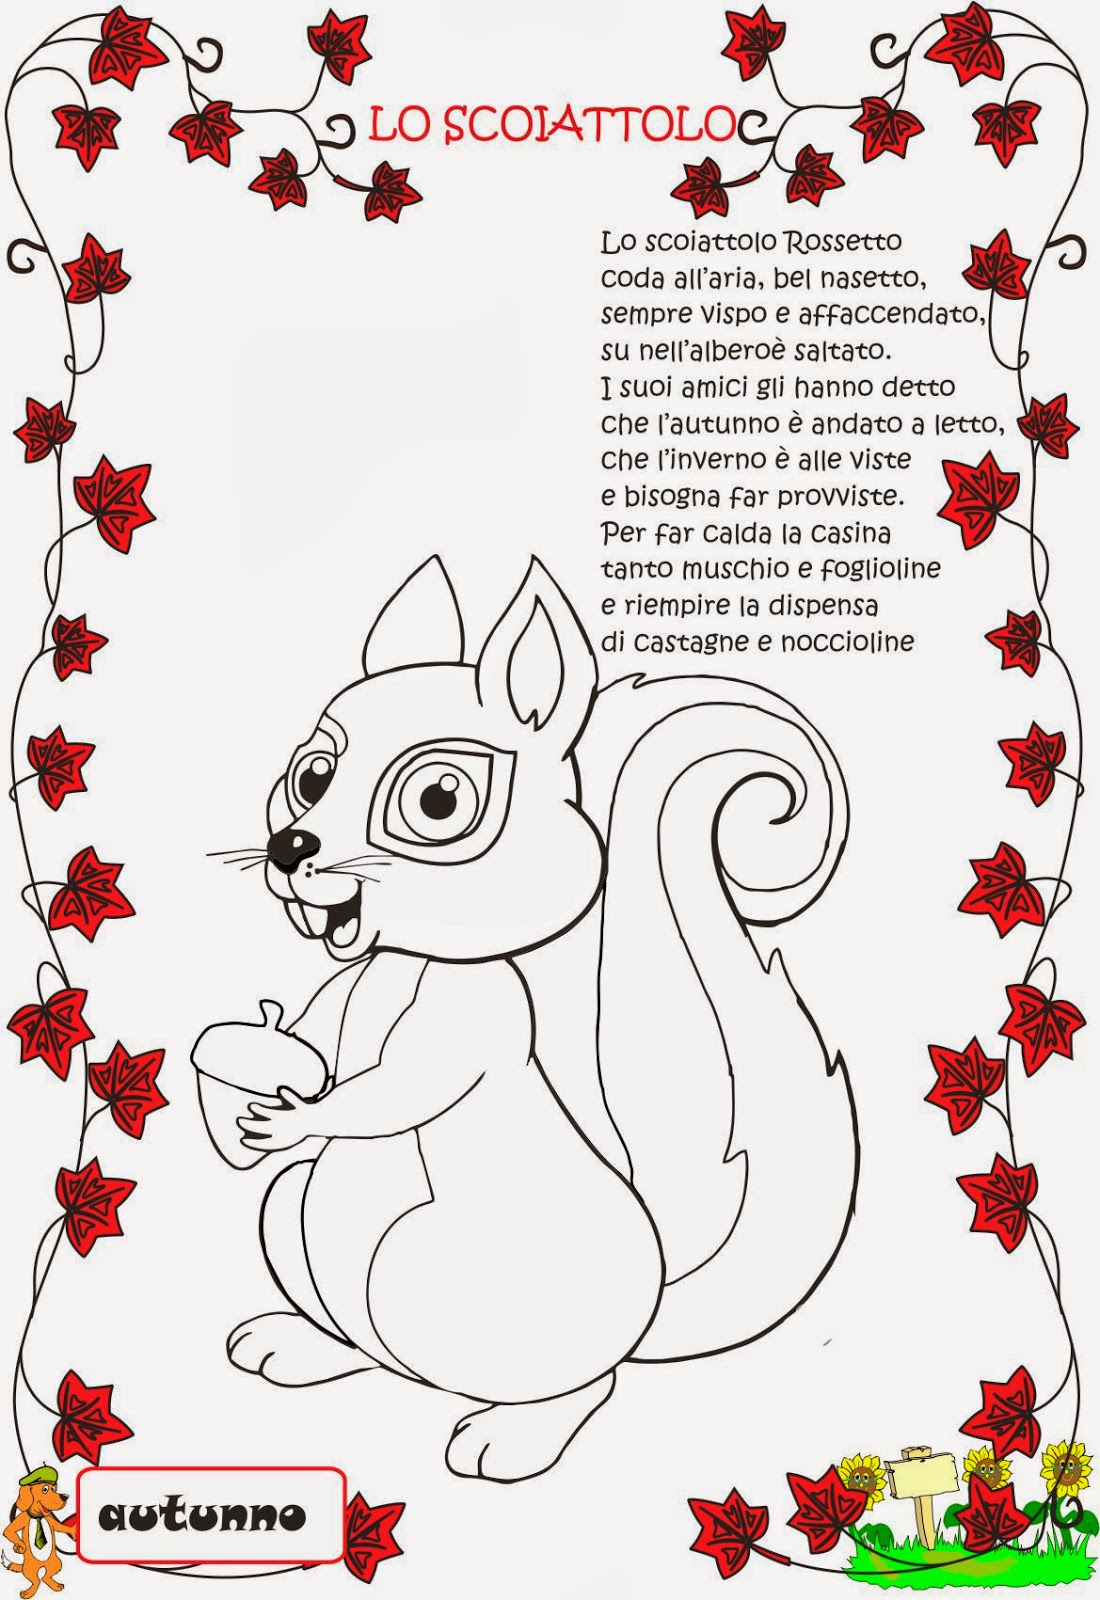 In Italia si trovano tre specie di scoiattoli quello rosso quasi in via di estinzione quello nero e quello grigio